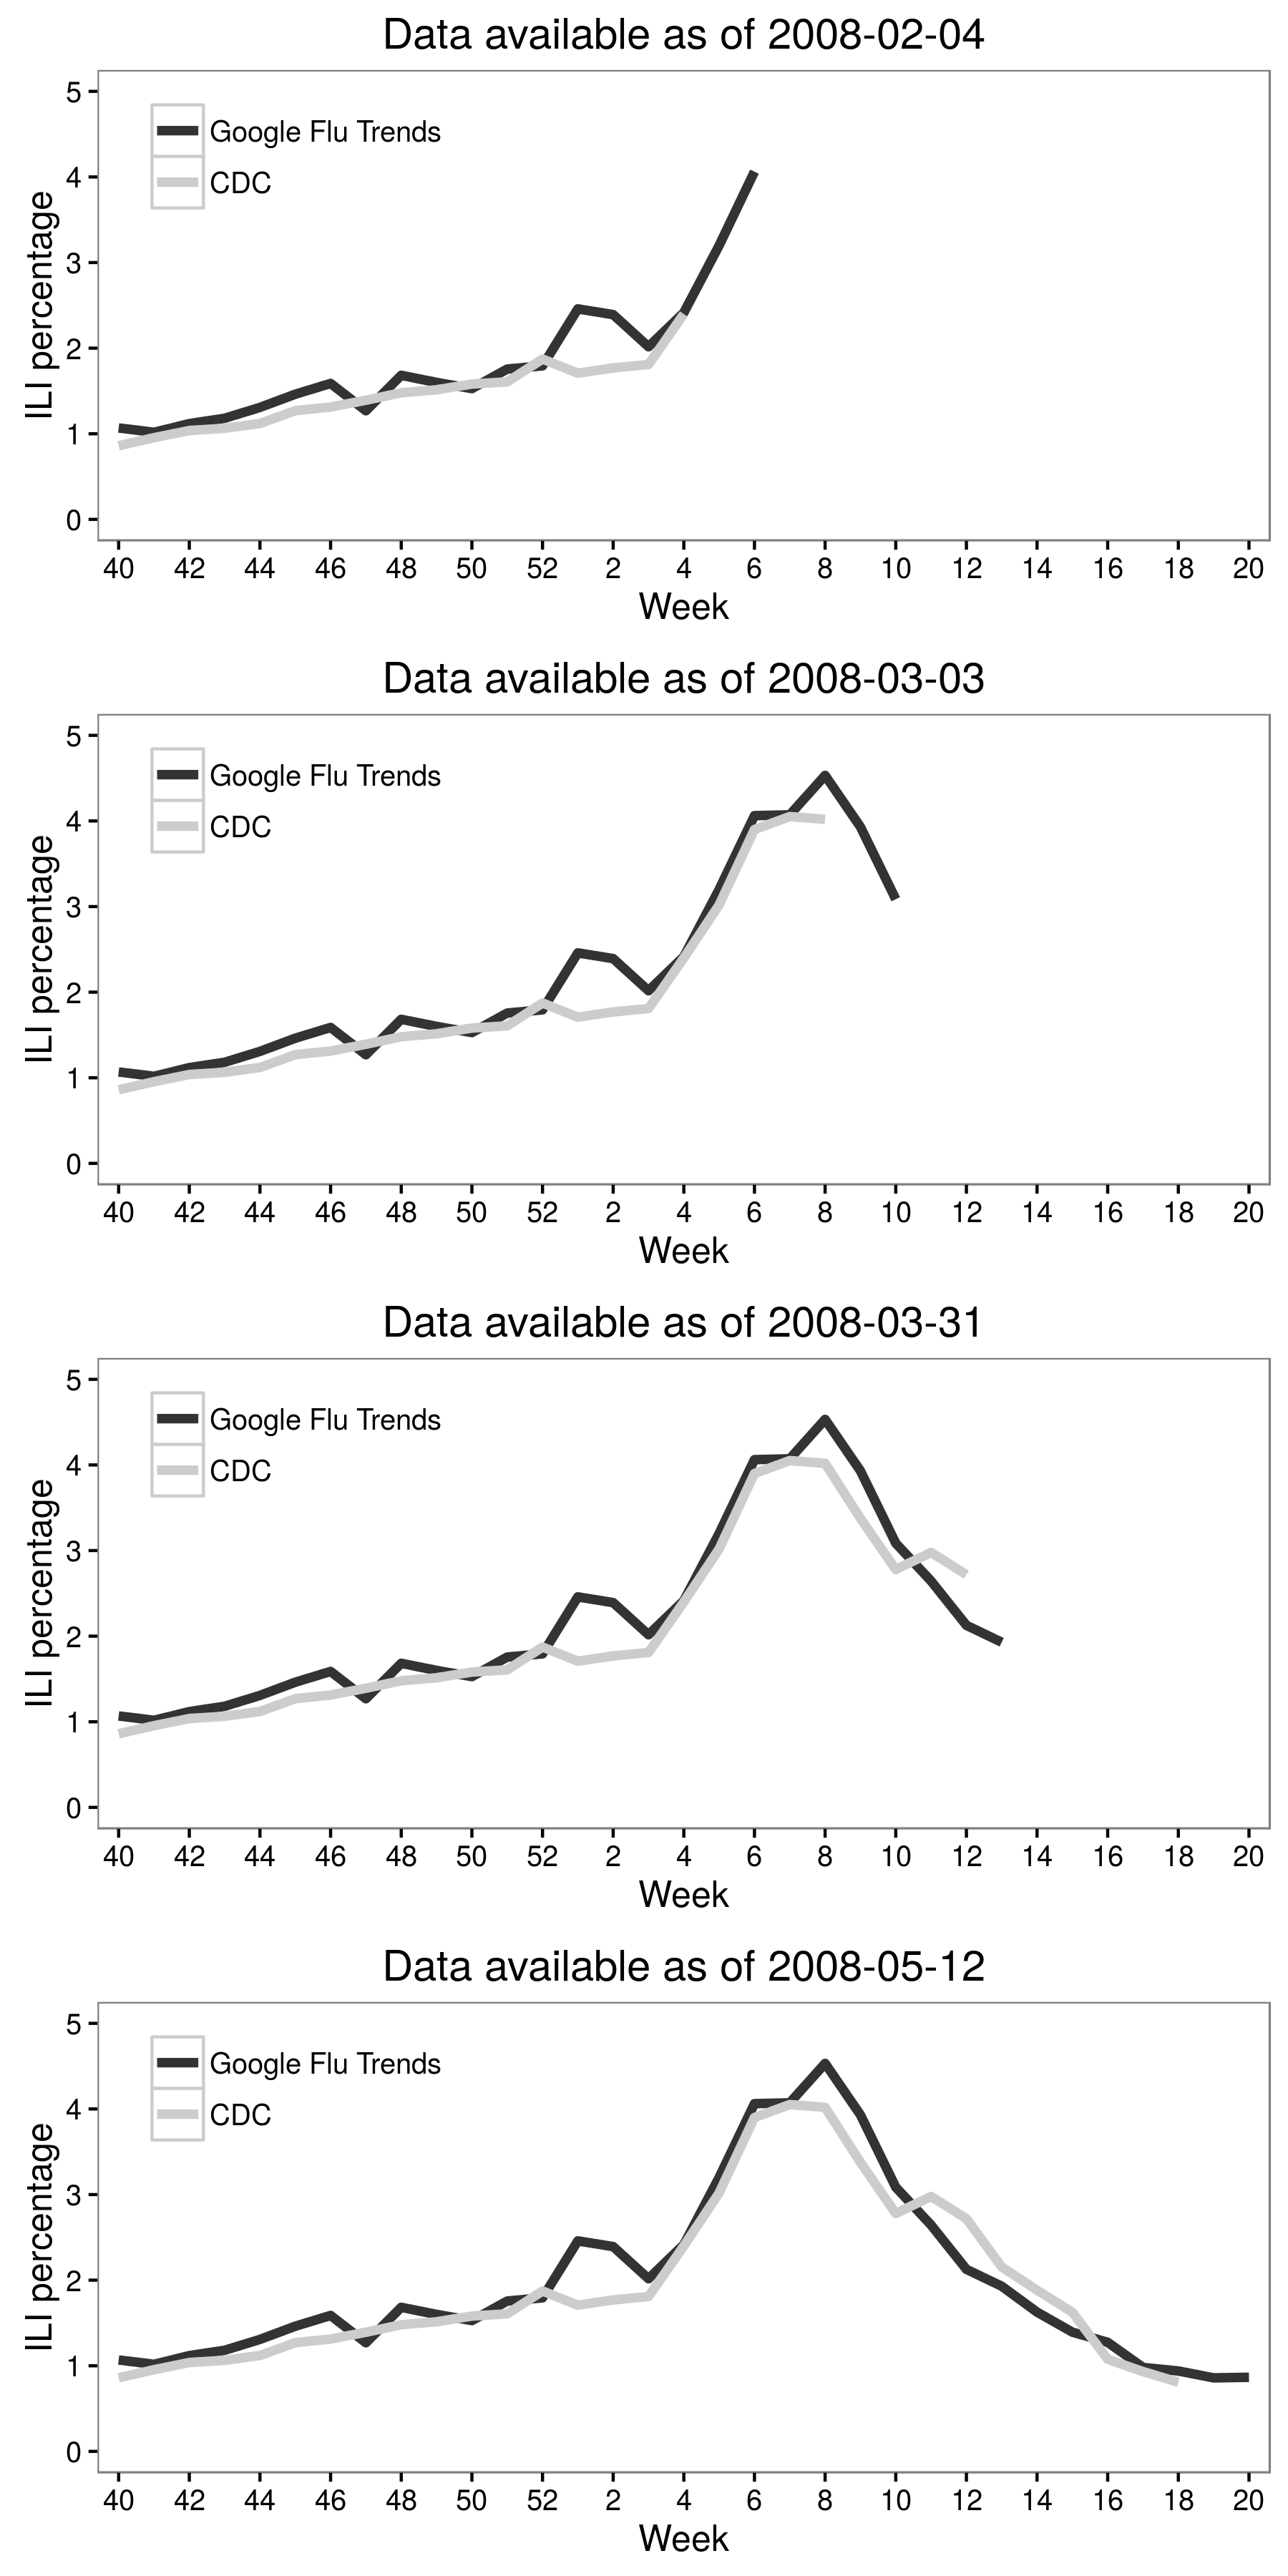 Figur 2.6: Jeremy Ginsberg og kolleger (2009) kombinerte Googles søkedata med CDC-data for å skape Google Flu-trender, noe som kunne senke graden av influensalignende sykdom (ILI). Resultatene i denne figuren er for Midt-Atlanterhavsregionen i USA i influensasesongen 2007-2008. Selv om det i utgangspunktet var svært lovende, forringet ytelsen til Google Flu Trends over tid (Cook et al., 2011; Olson et al., 2013; Lazer et al., 2014). Tilpasset fra Ginsberg et al. (2009), figur 3.